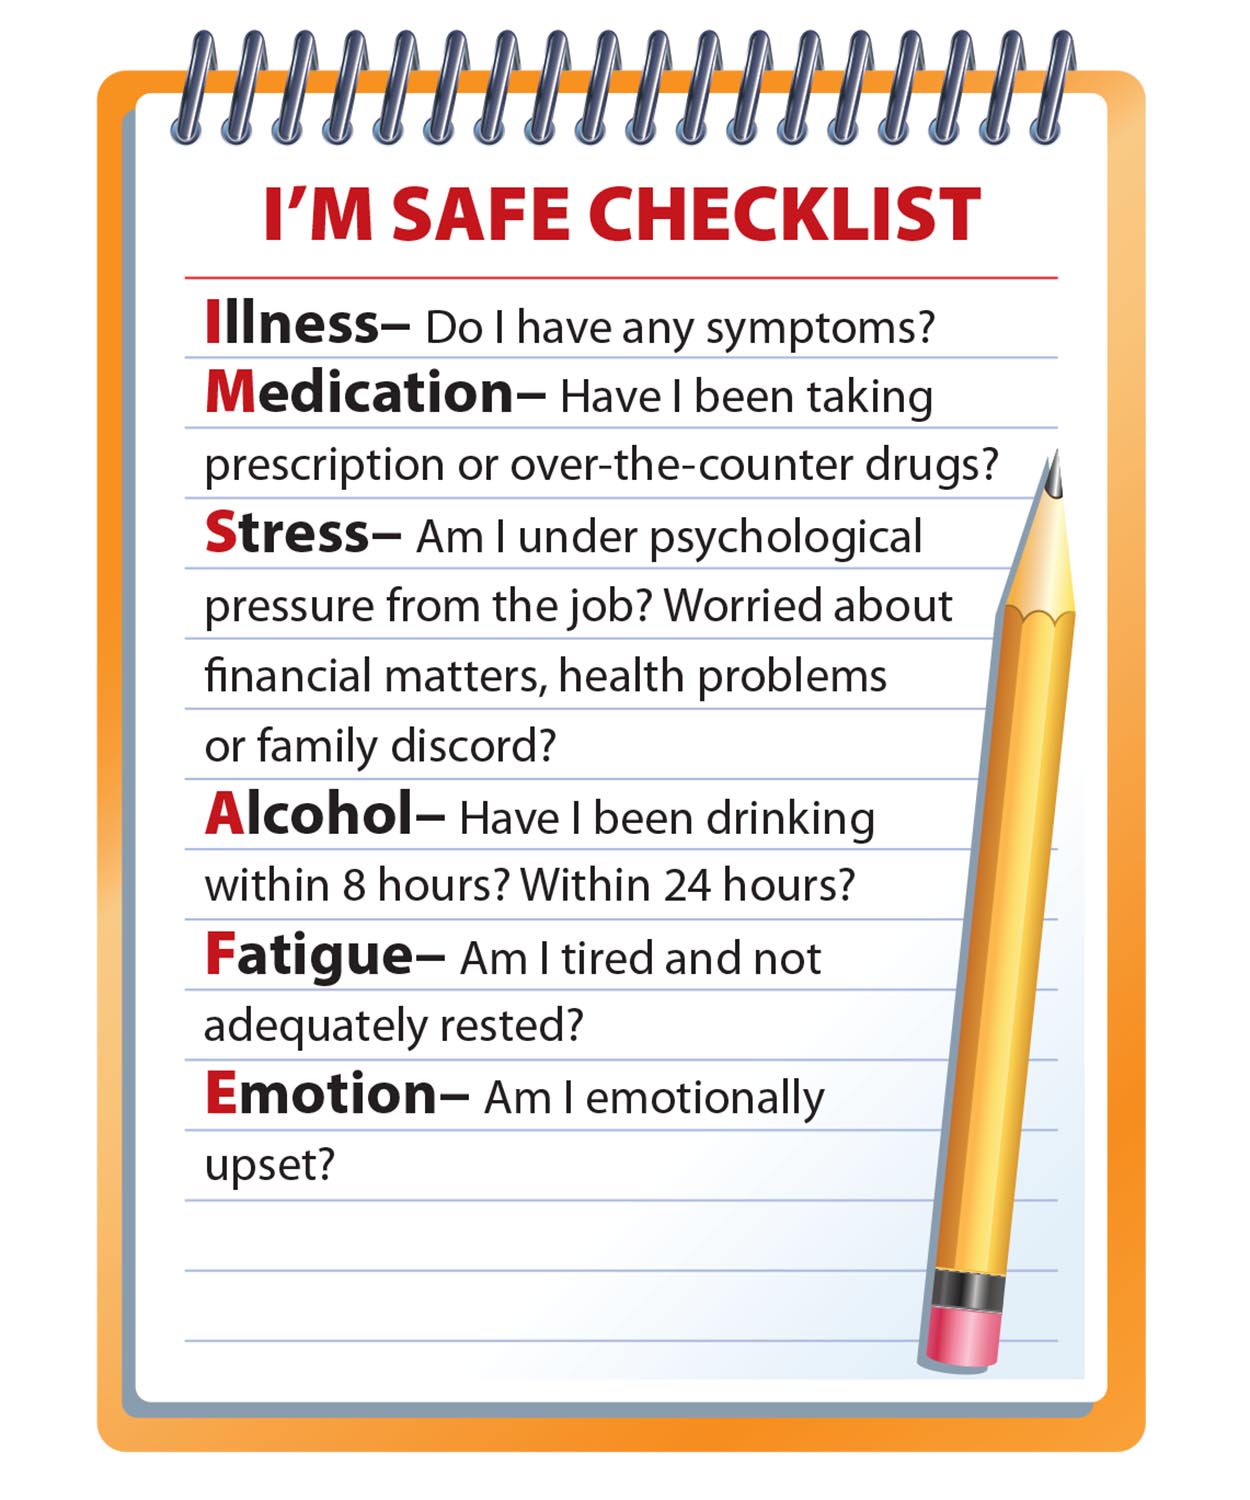 imsafe checklist in aim